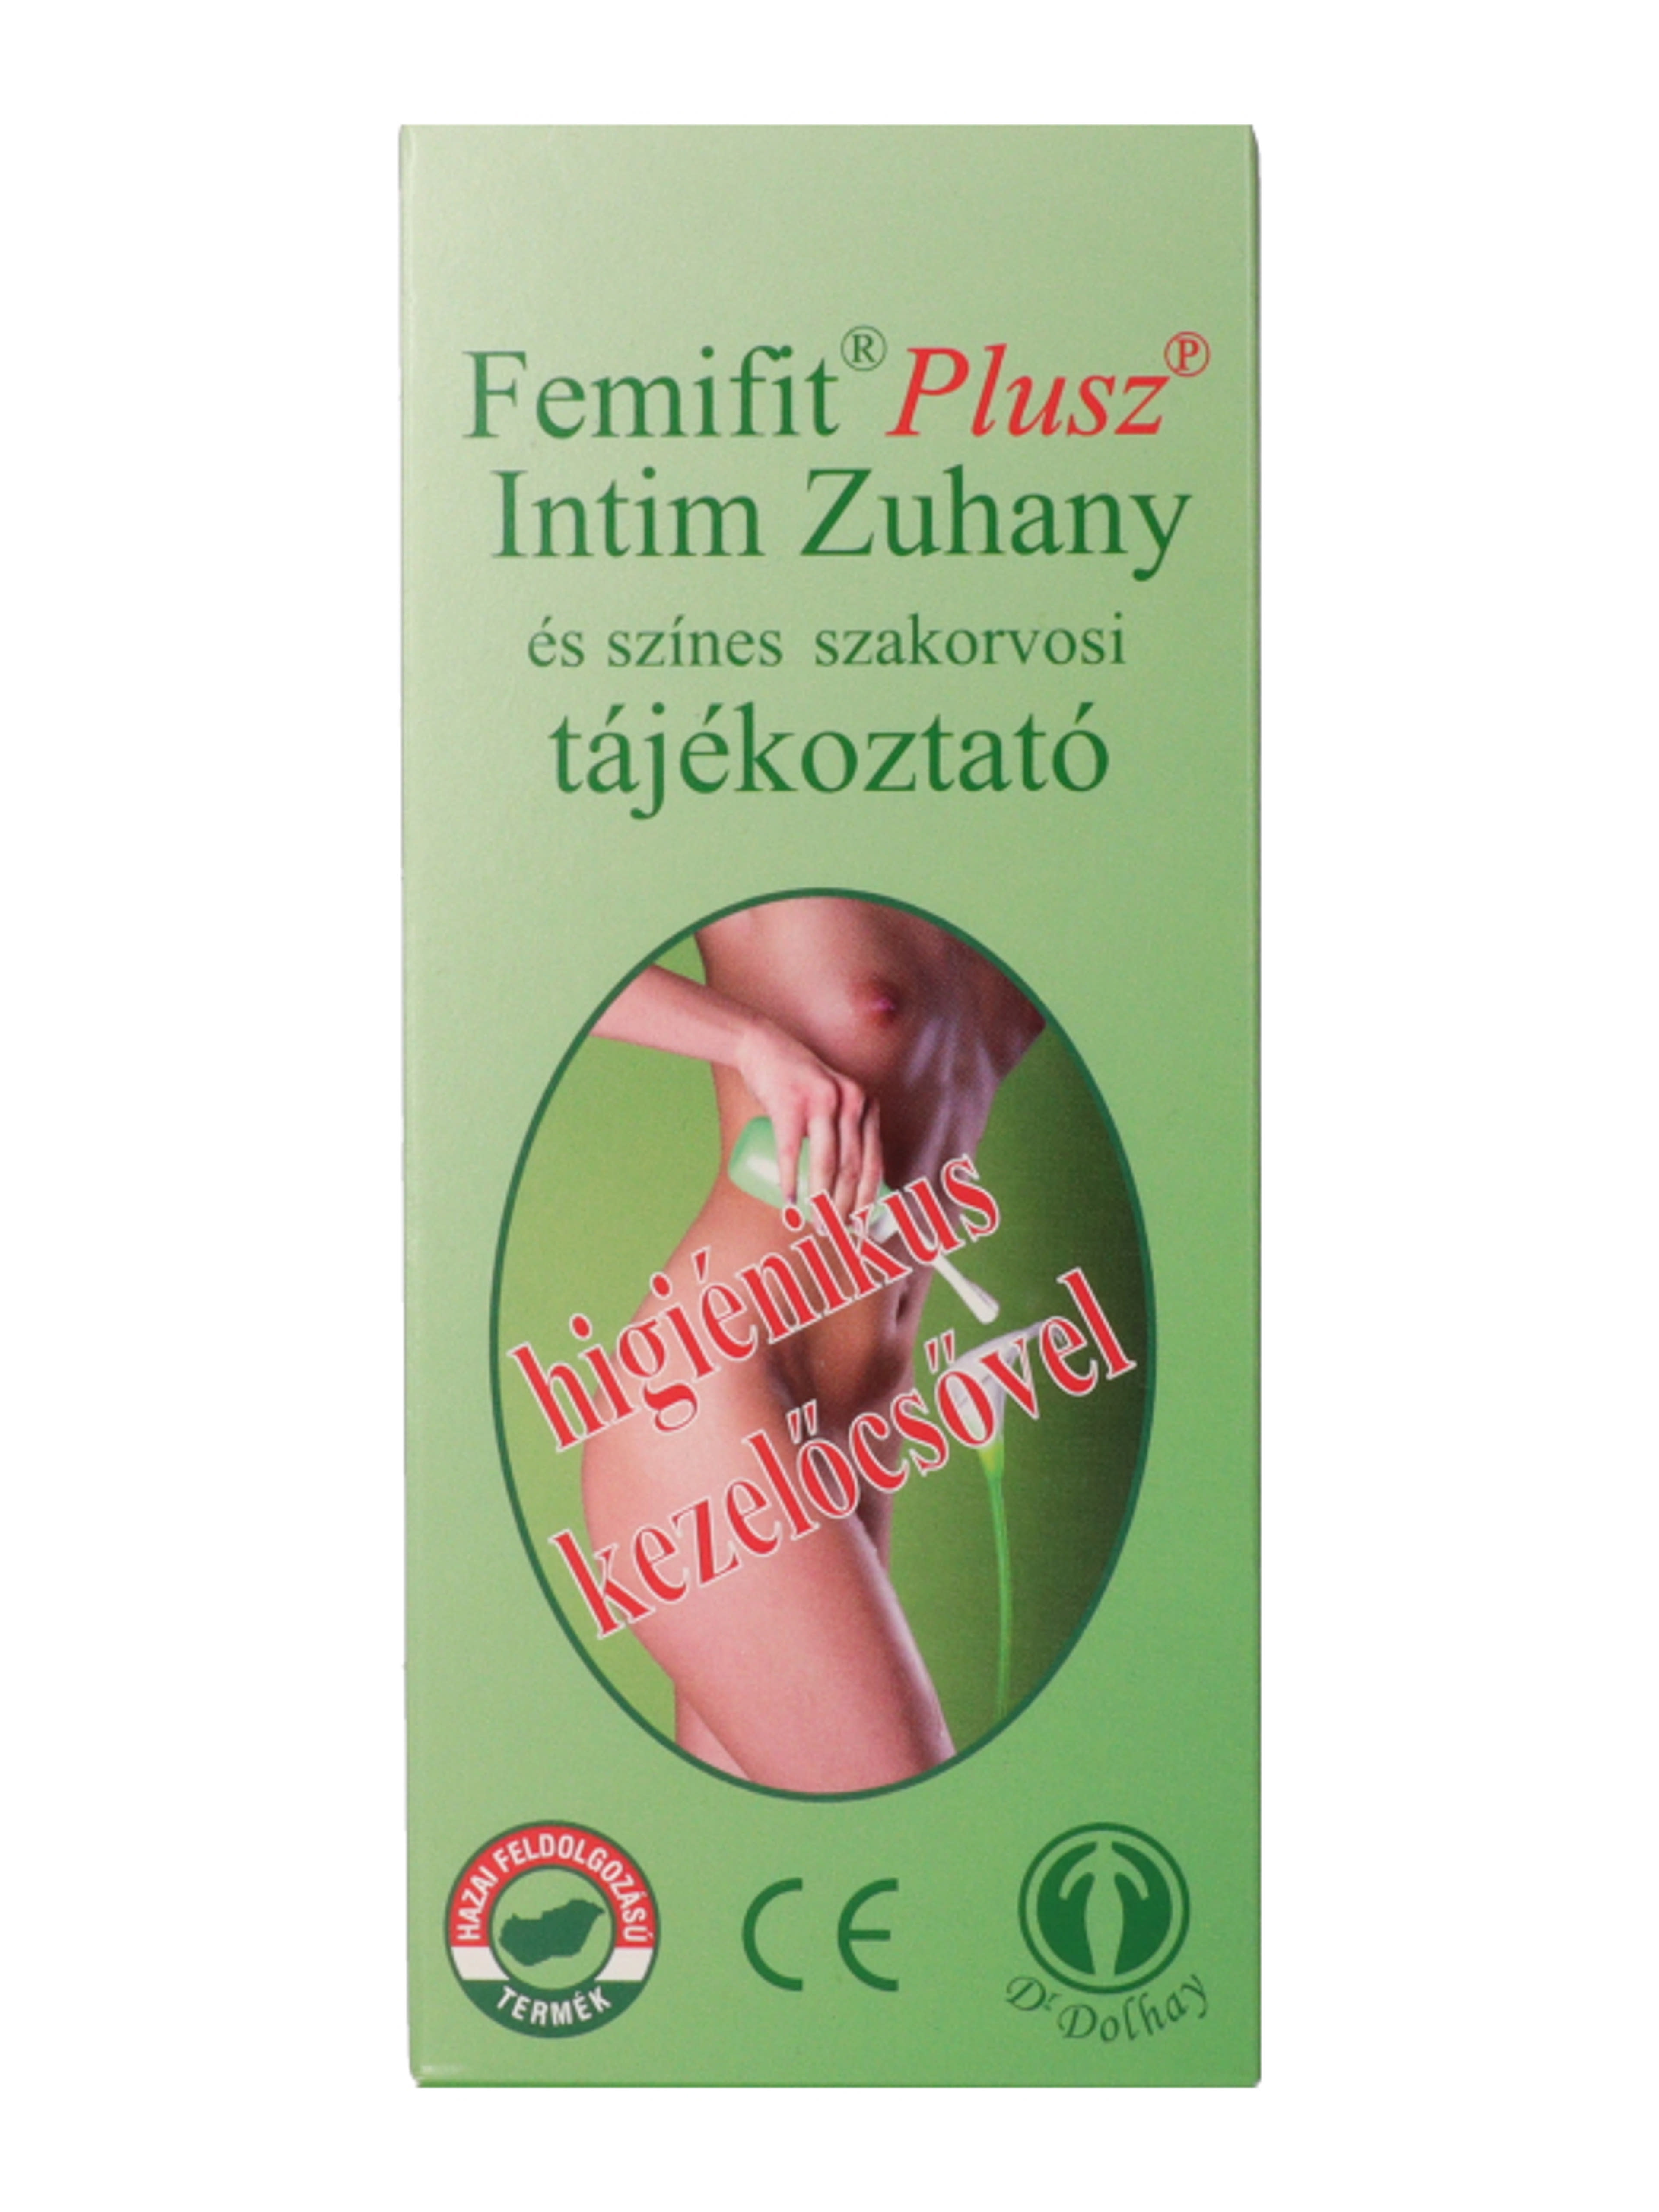 Femifit intim zuhany - 1 db-2